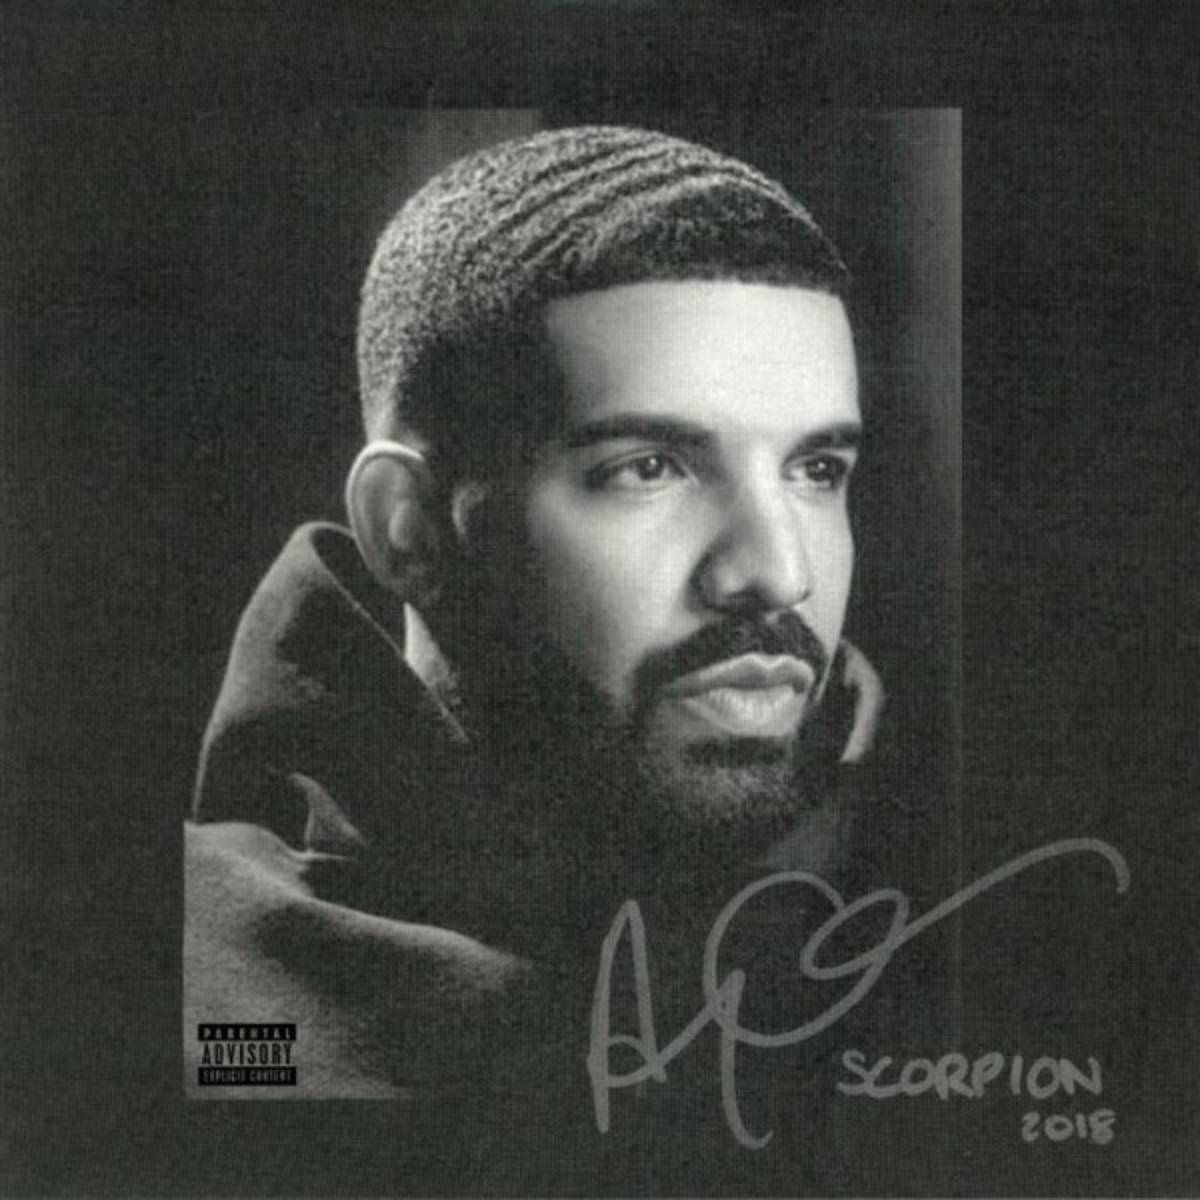 Scorpion (двойной альбом канадского исполнителя Дрейка)